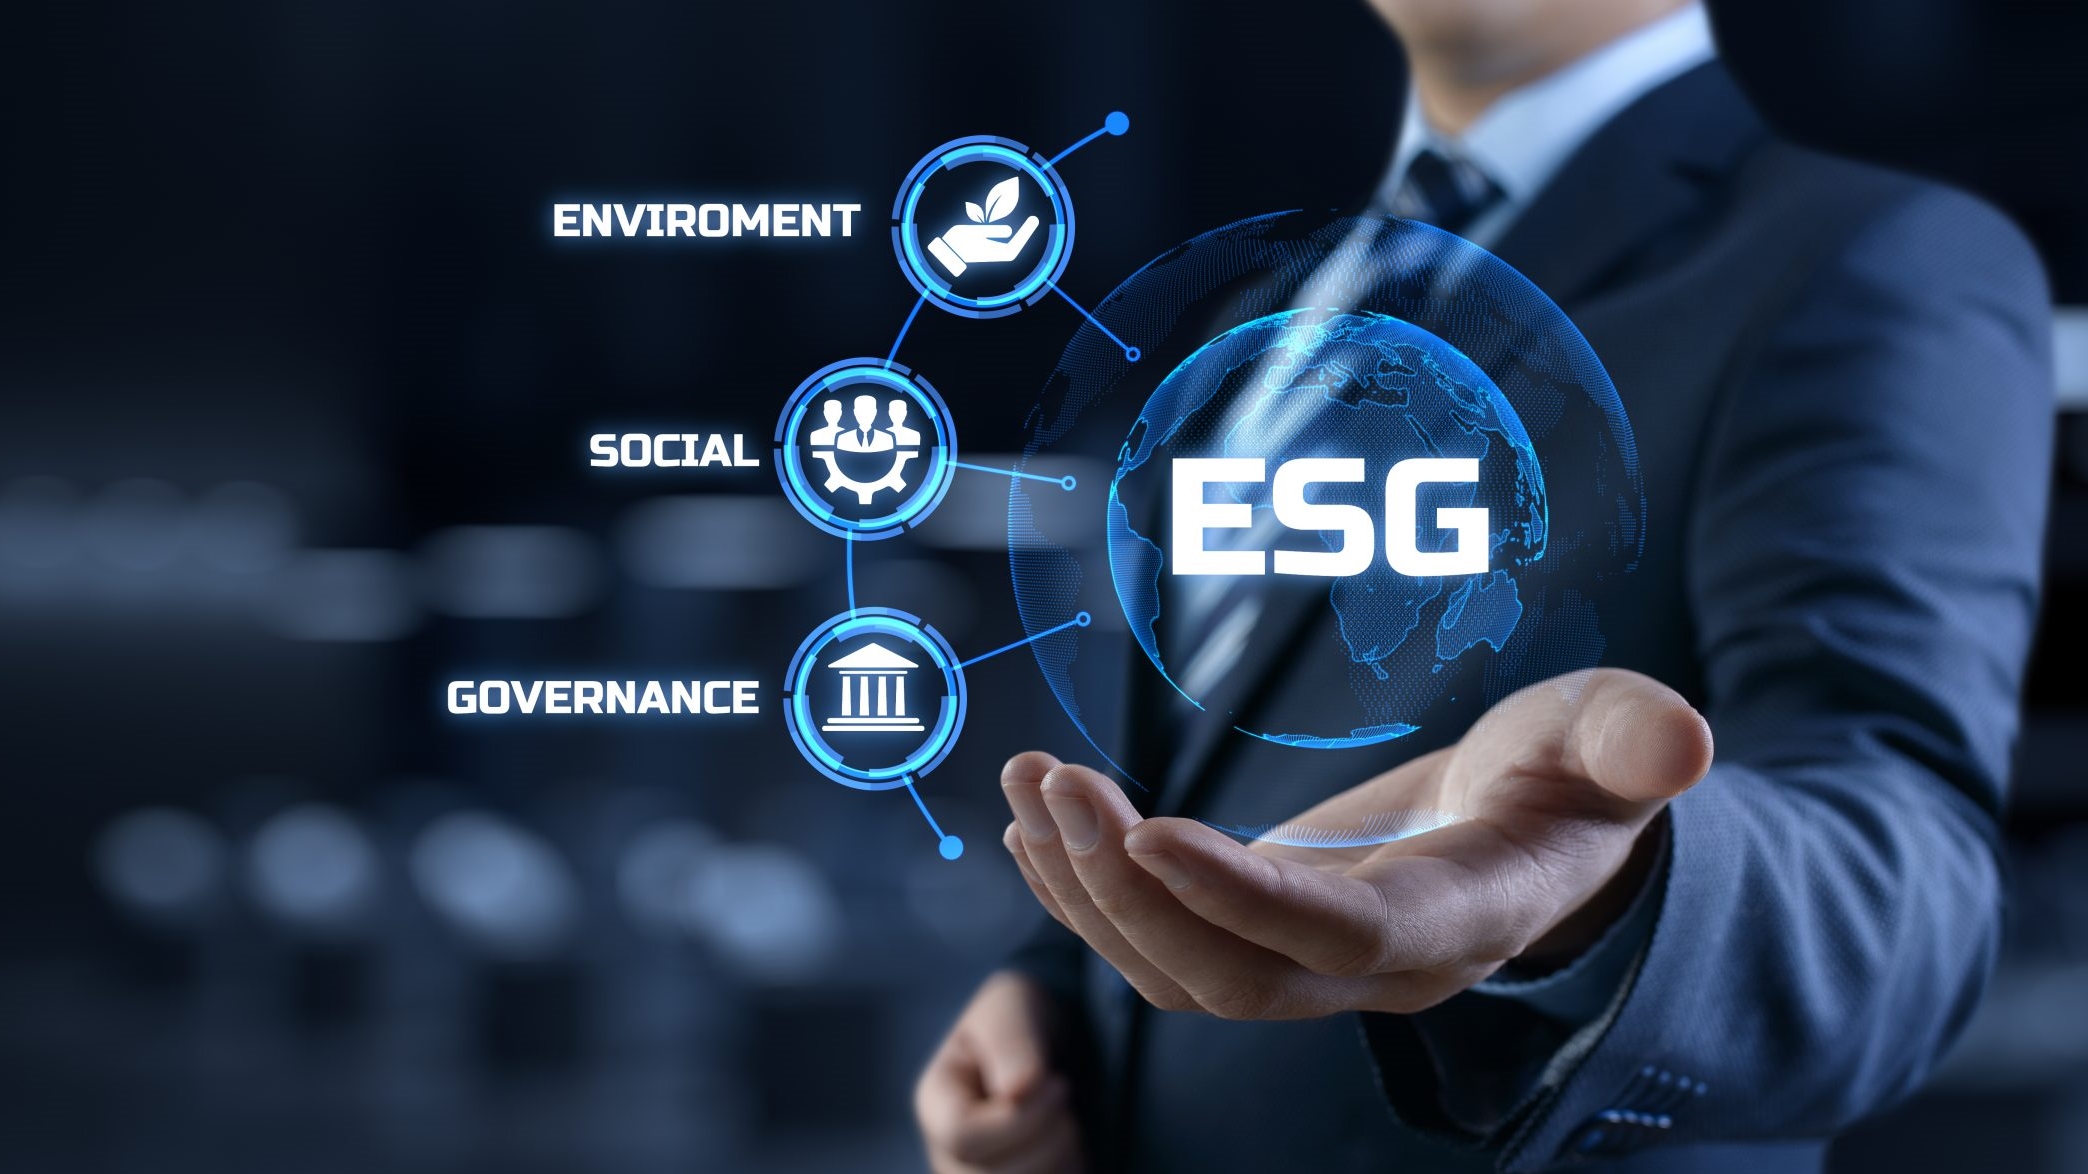 Artigo Environmental, Social and Governance - ESG